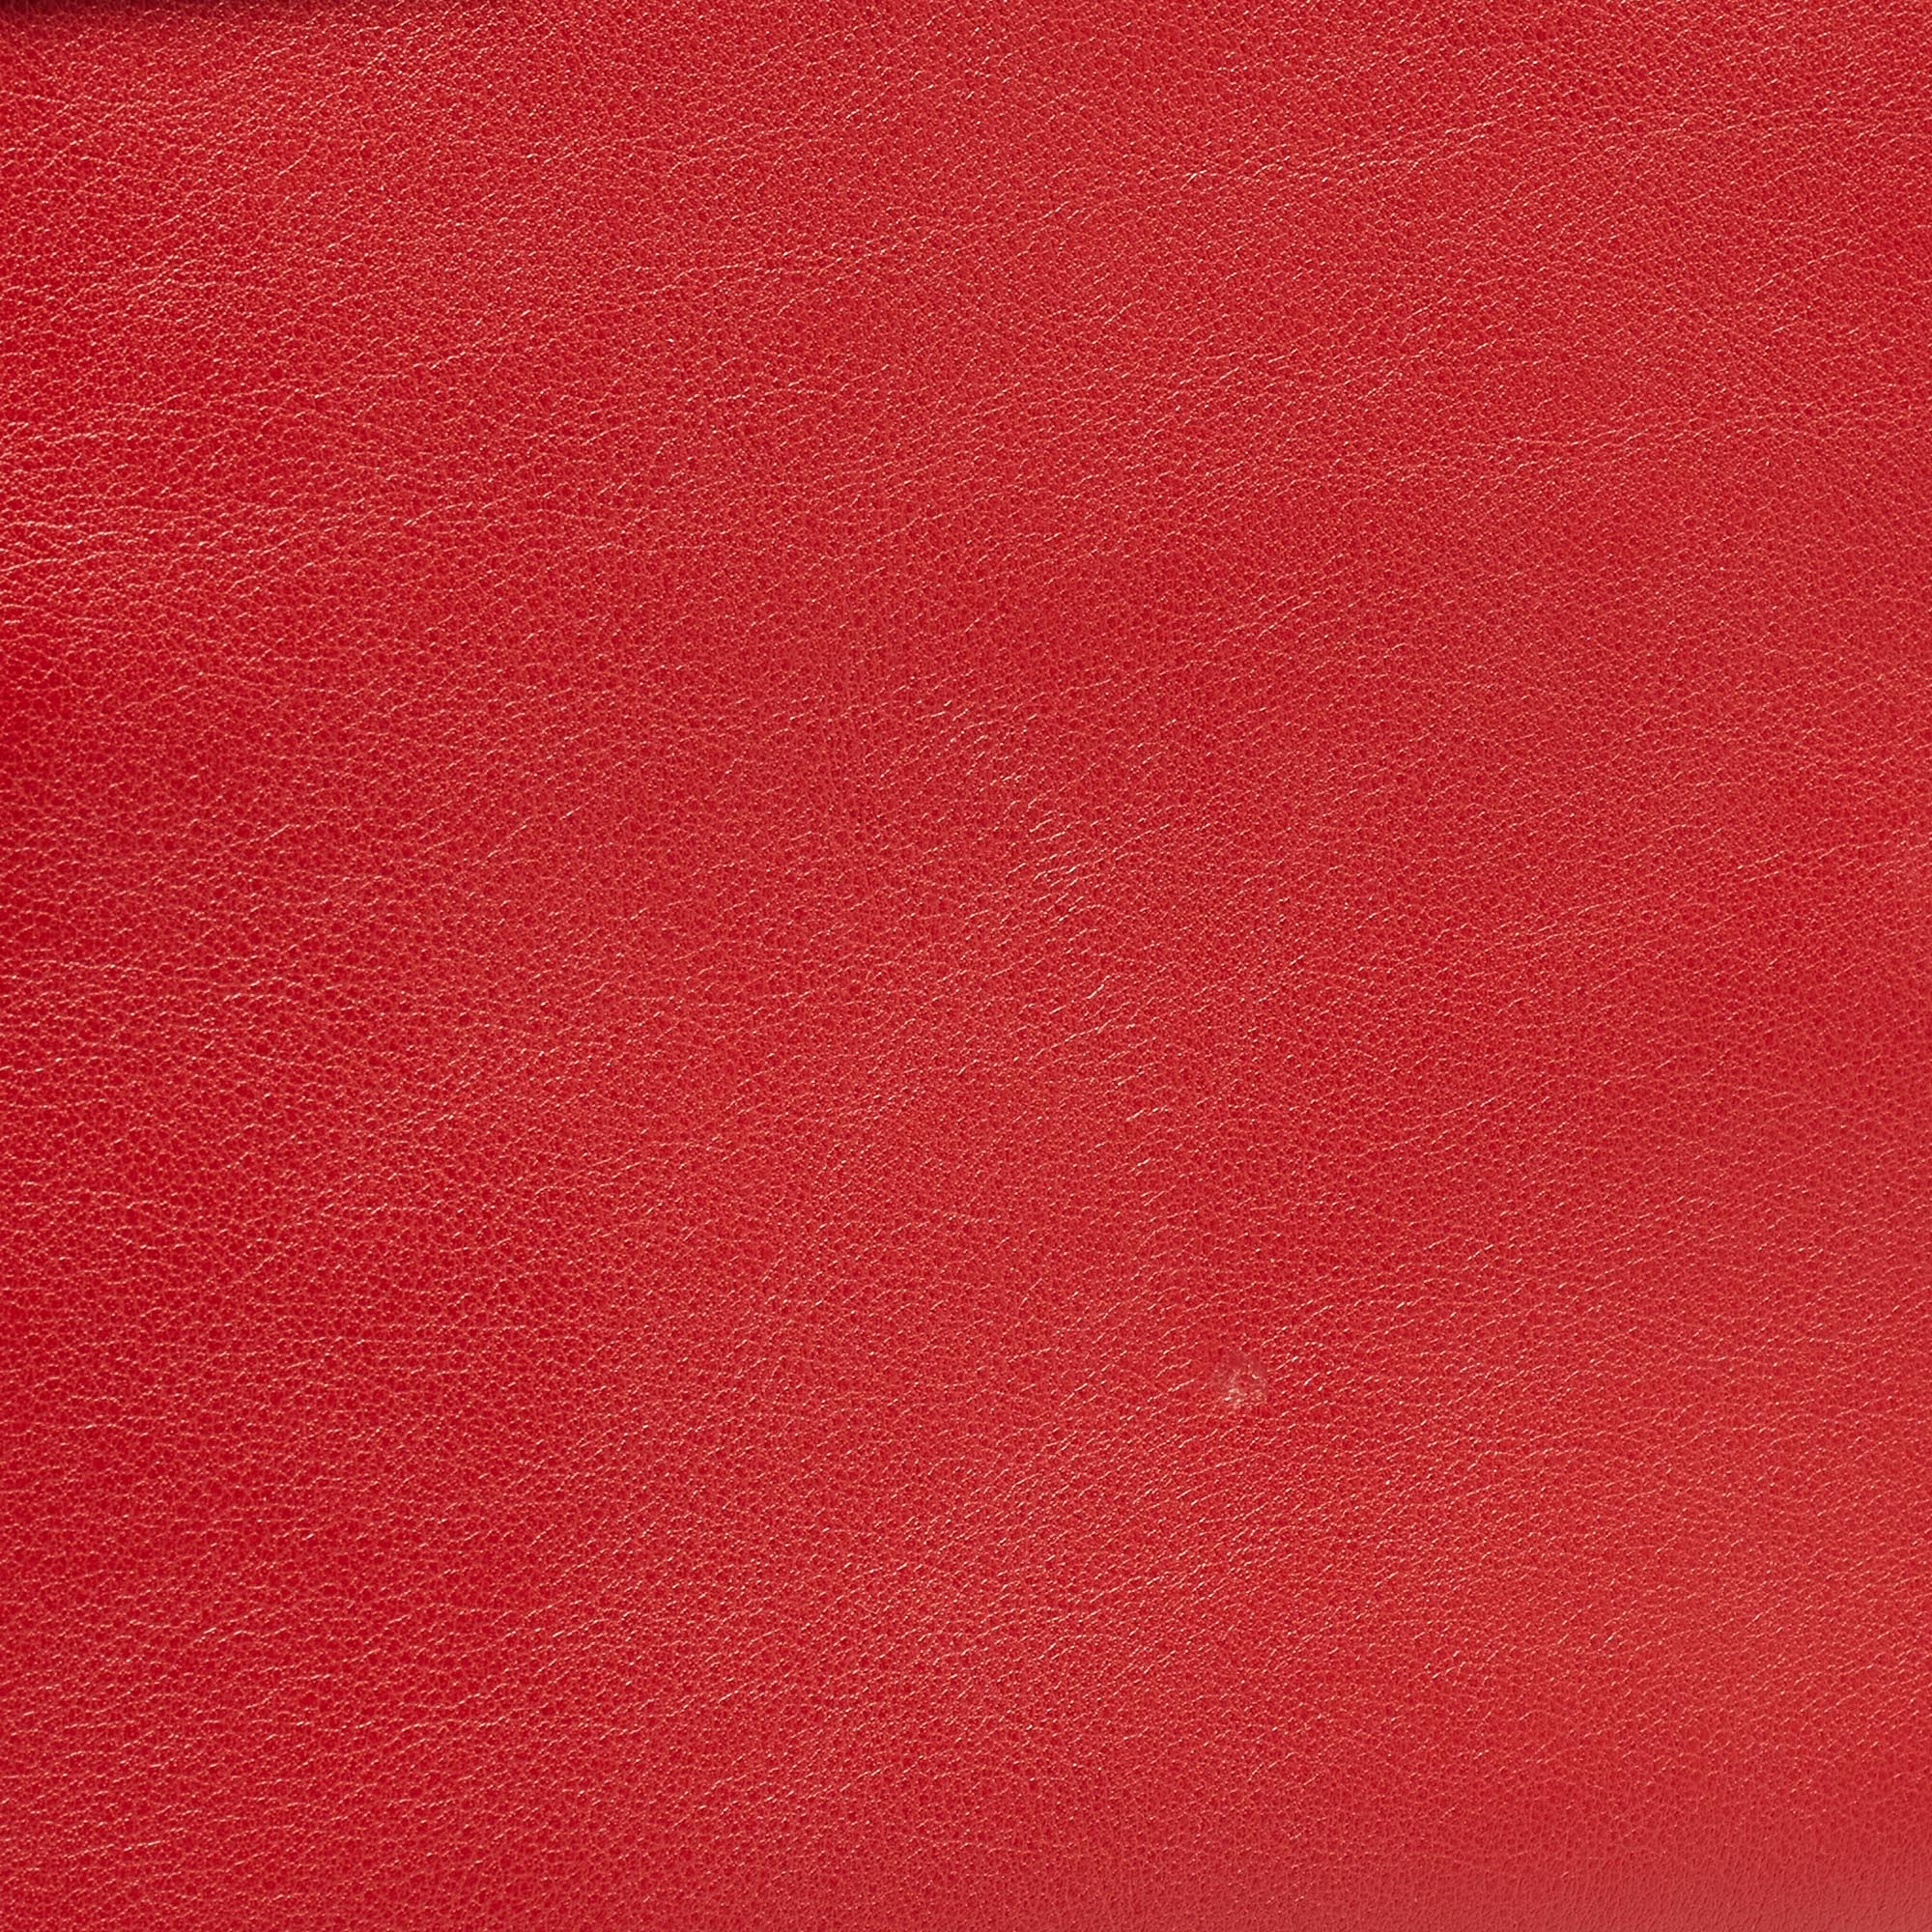 Saint Laurent Red Leather Large Sac De Jour Tote